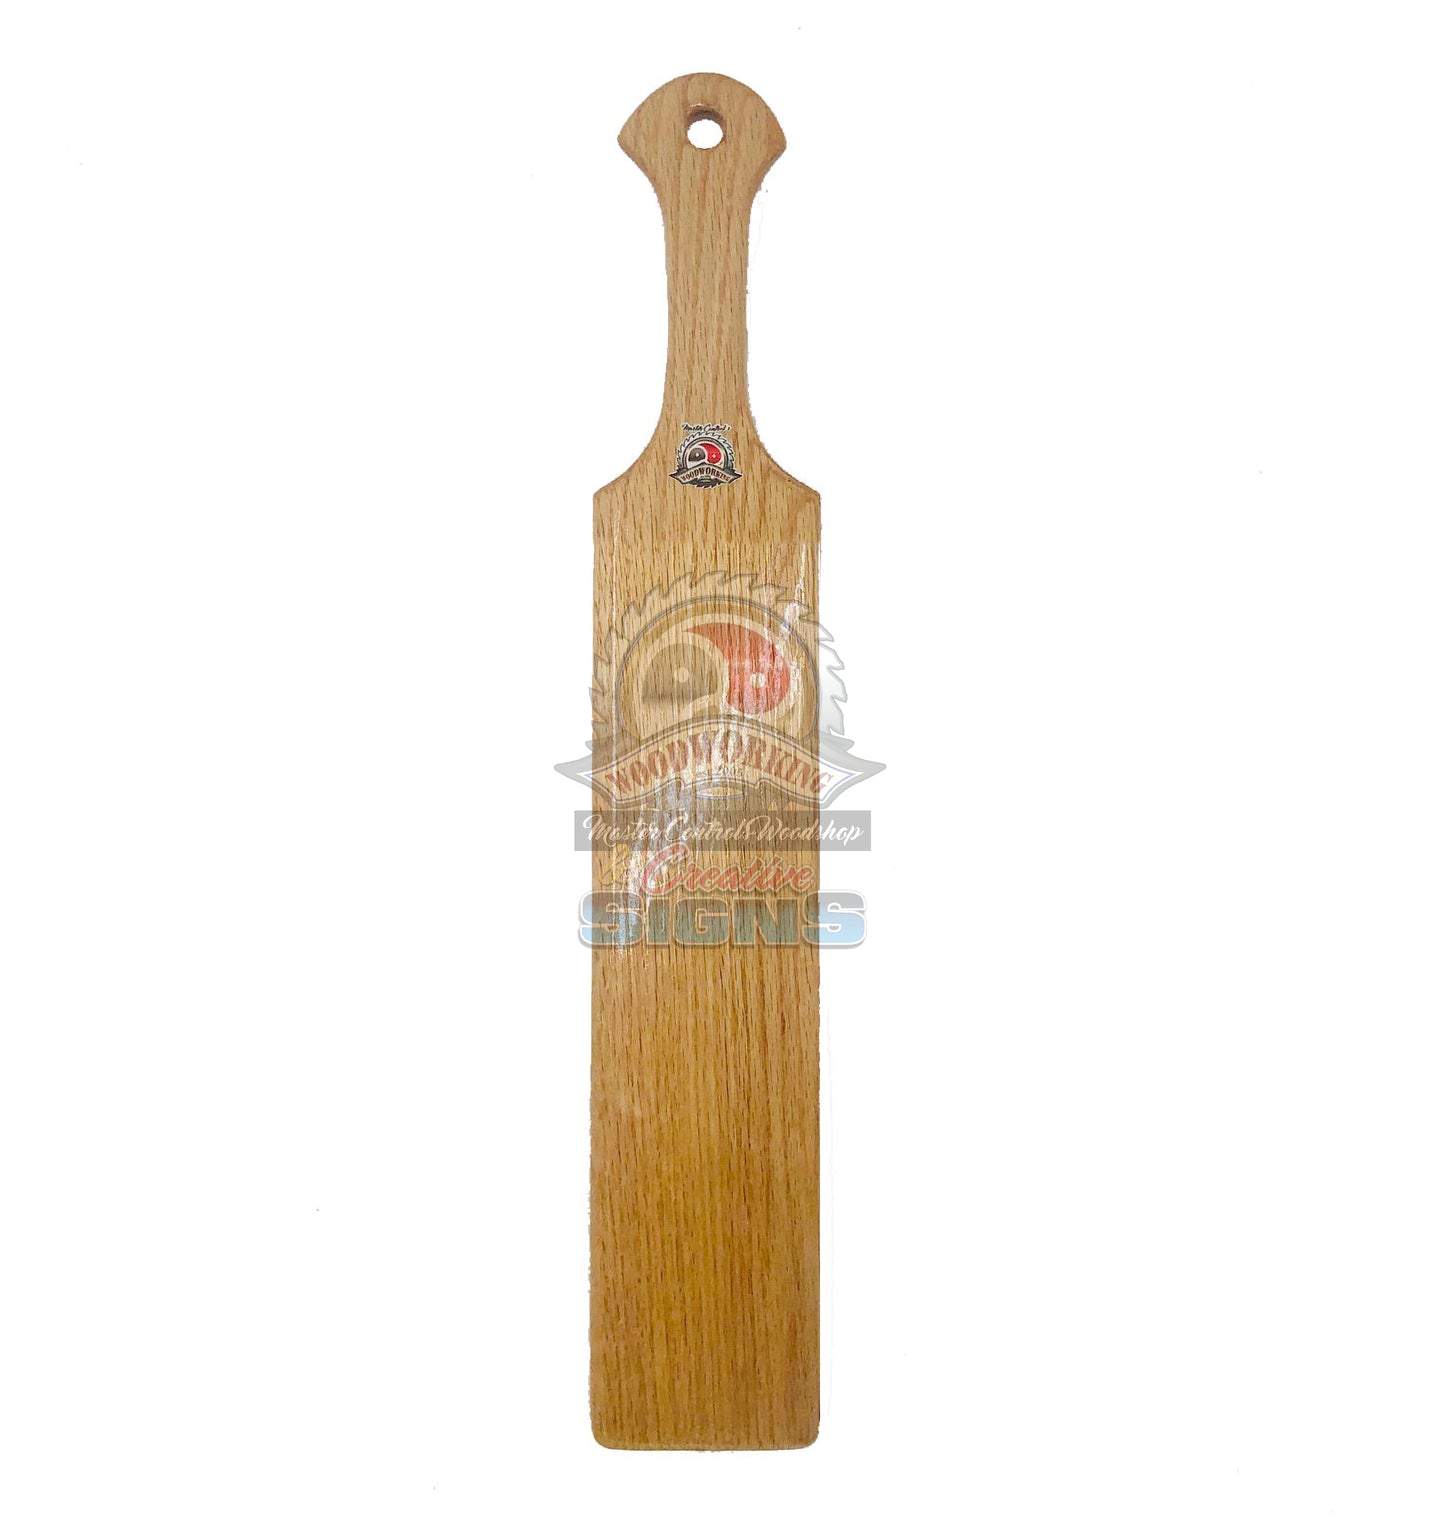 Long Wooden Spanking Paddle, hardwood paddle, wood paddle, paddle, spanking paddle, paddle, bdsm, impact, punishment, discipline